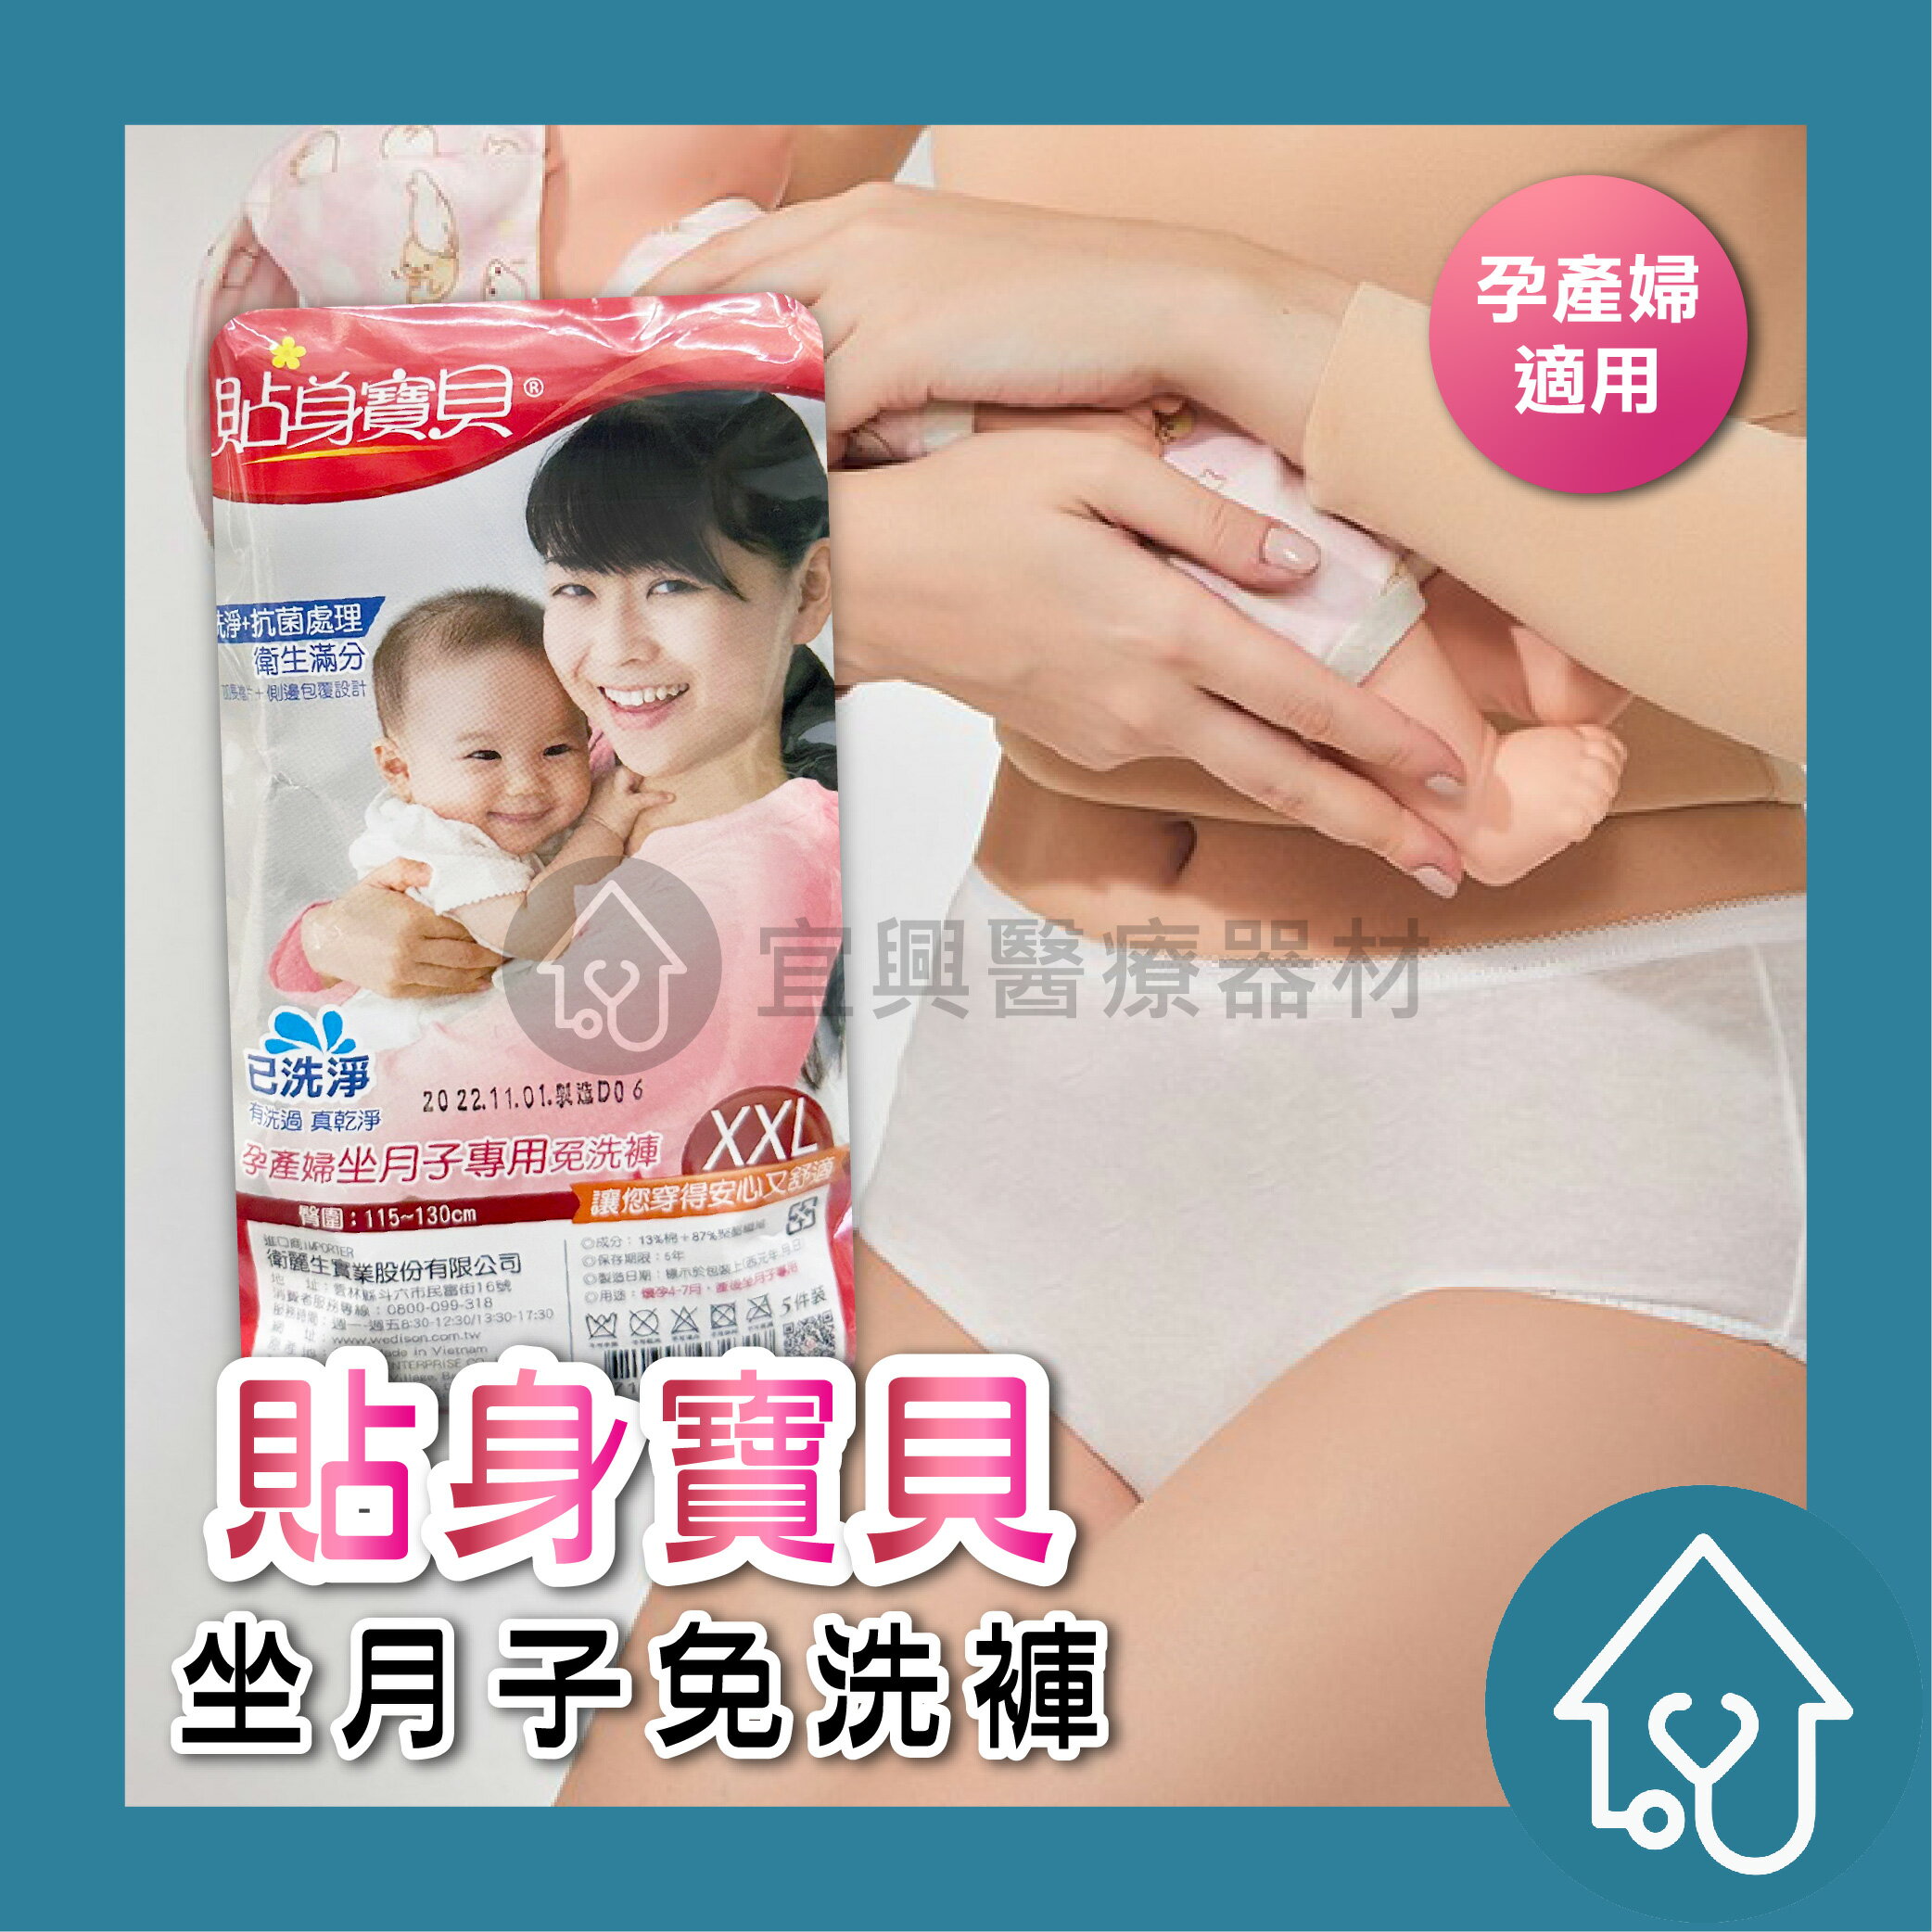 貼身寶貝 孕產婦坐月子免洗褲 5入 生產適用 生理褲